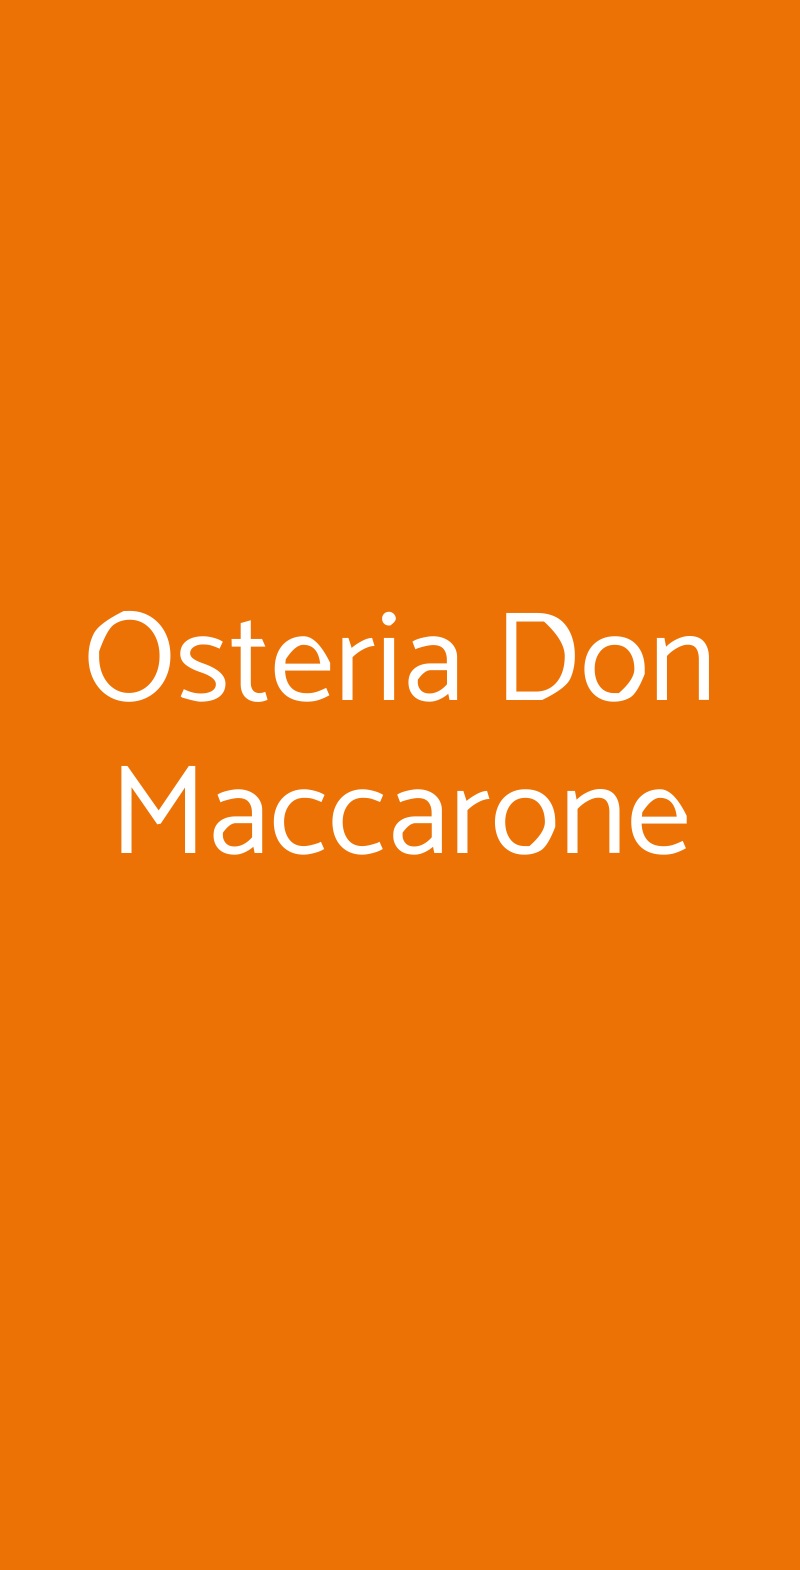 Osteria Don Maccarone Napoli menù 1 pagina